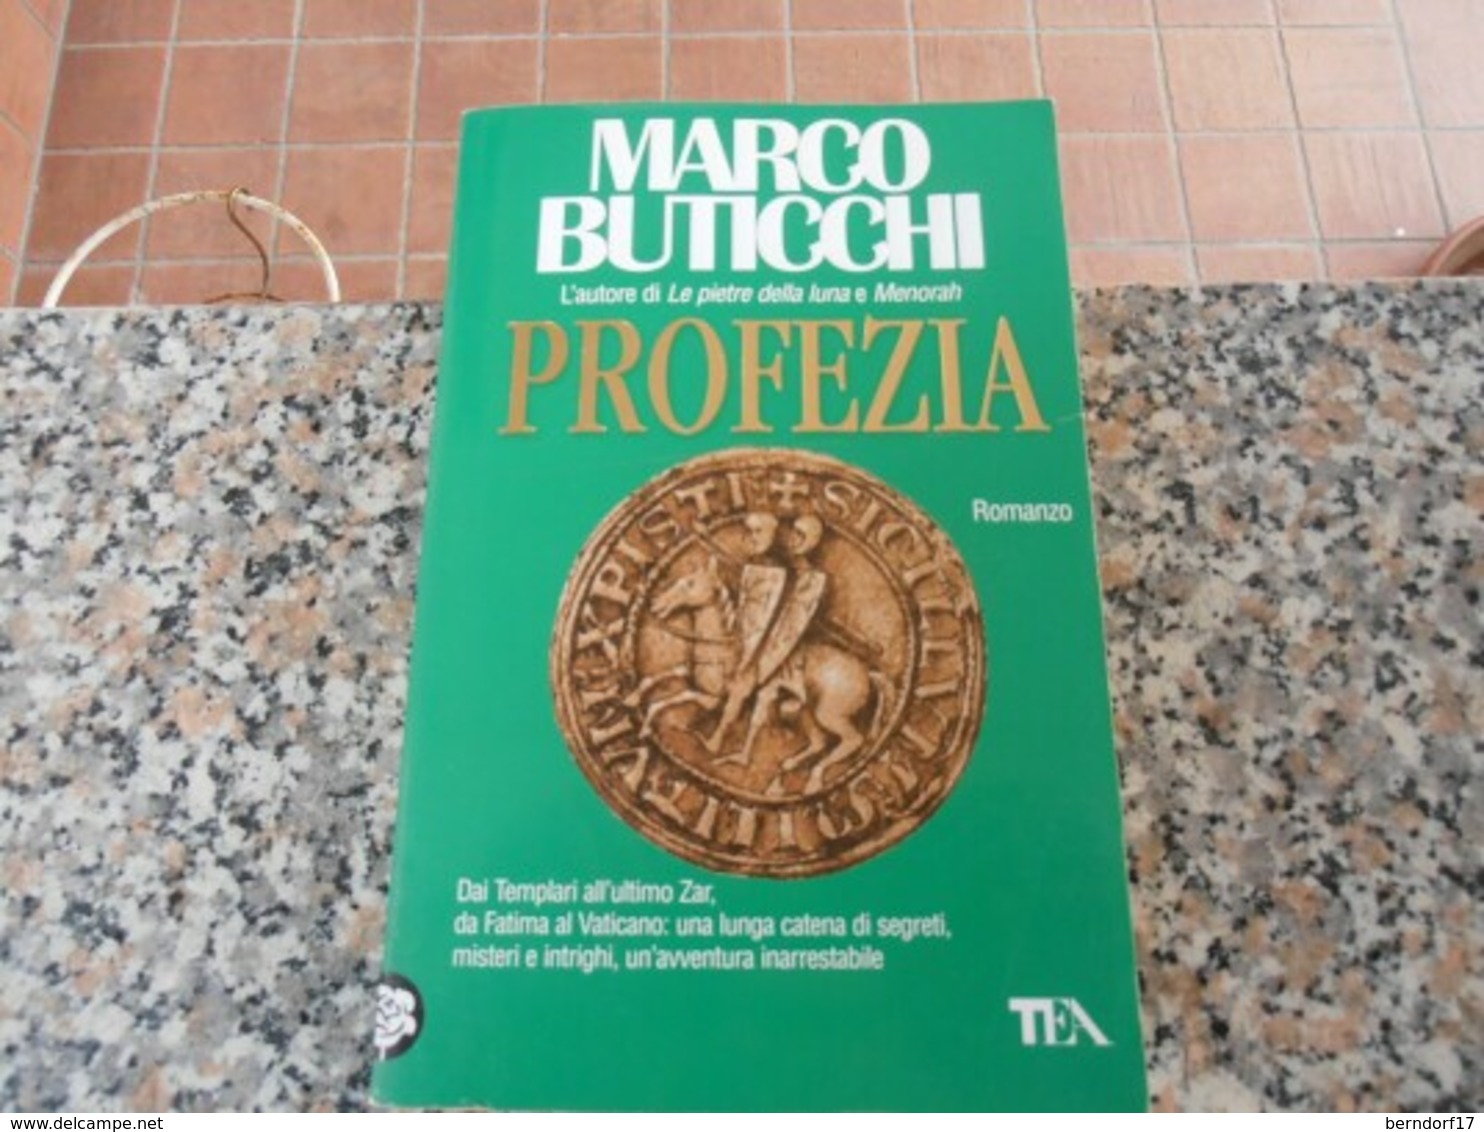 Profezia - Marco Buticchi - Abenteuer